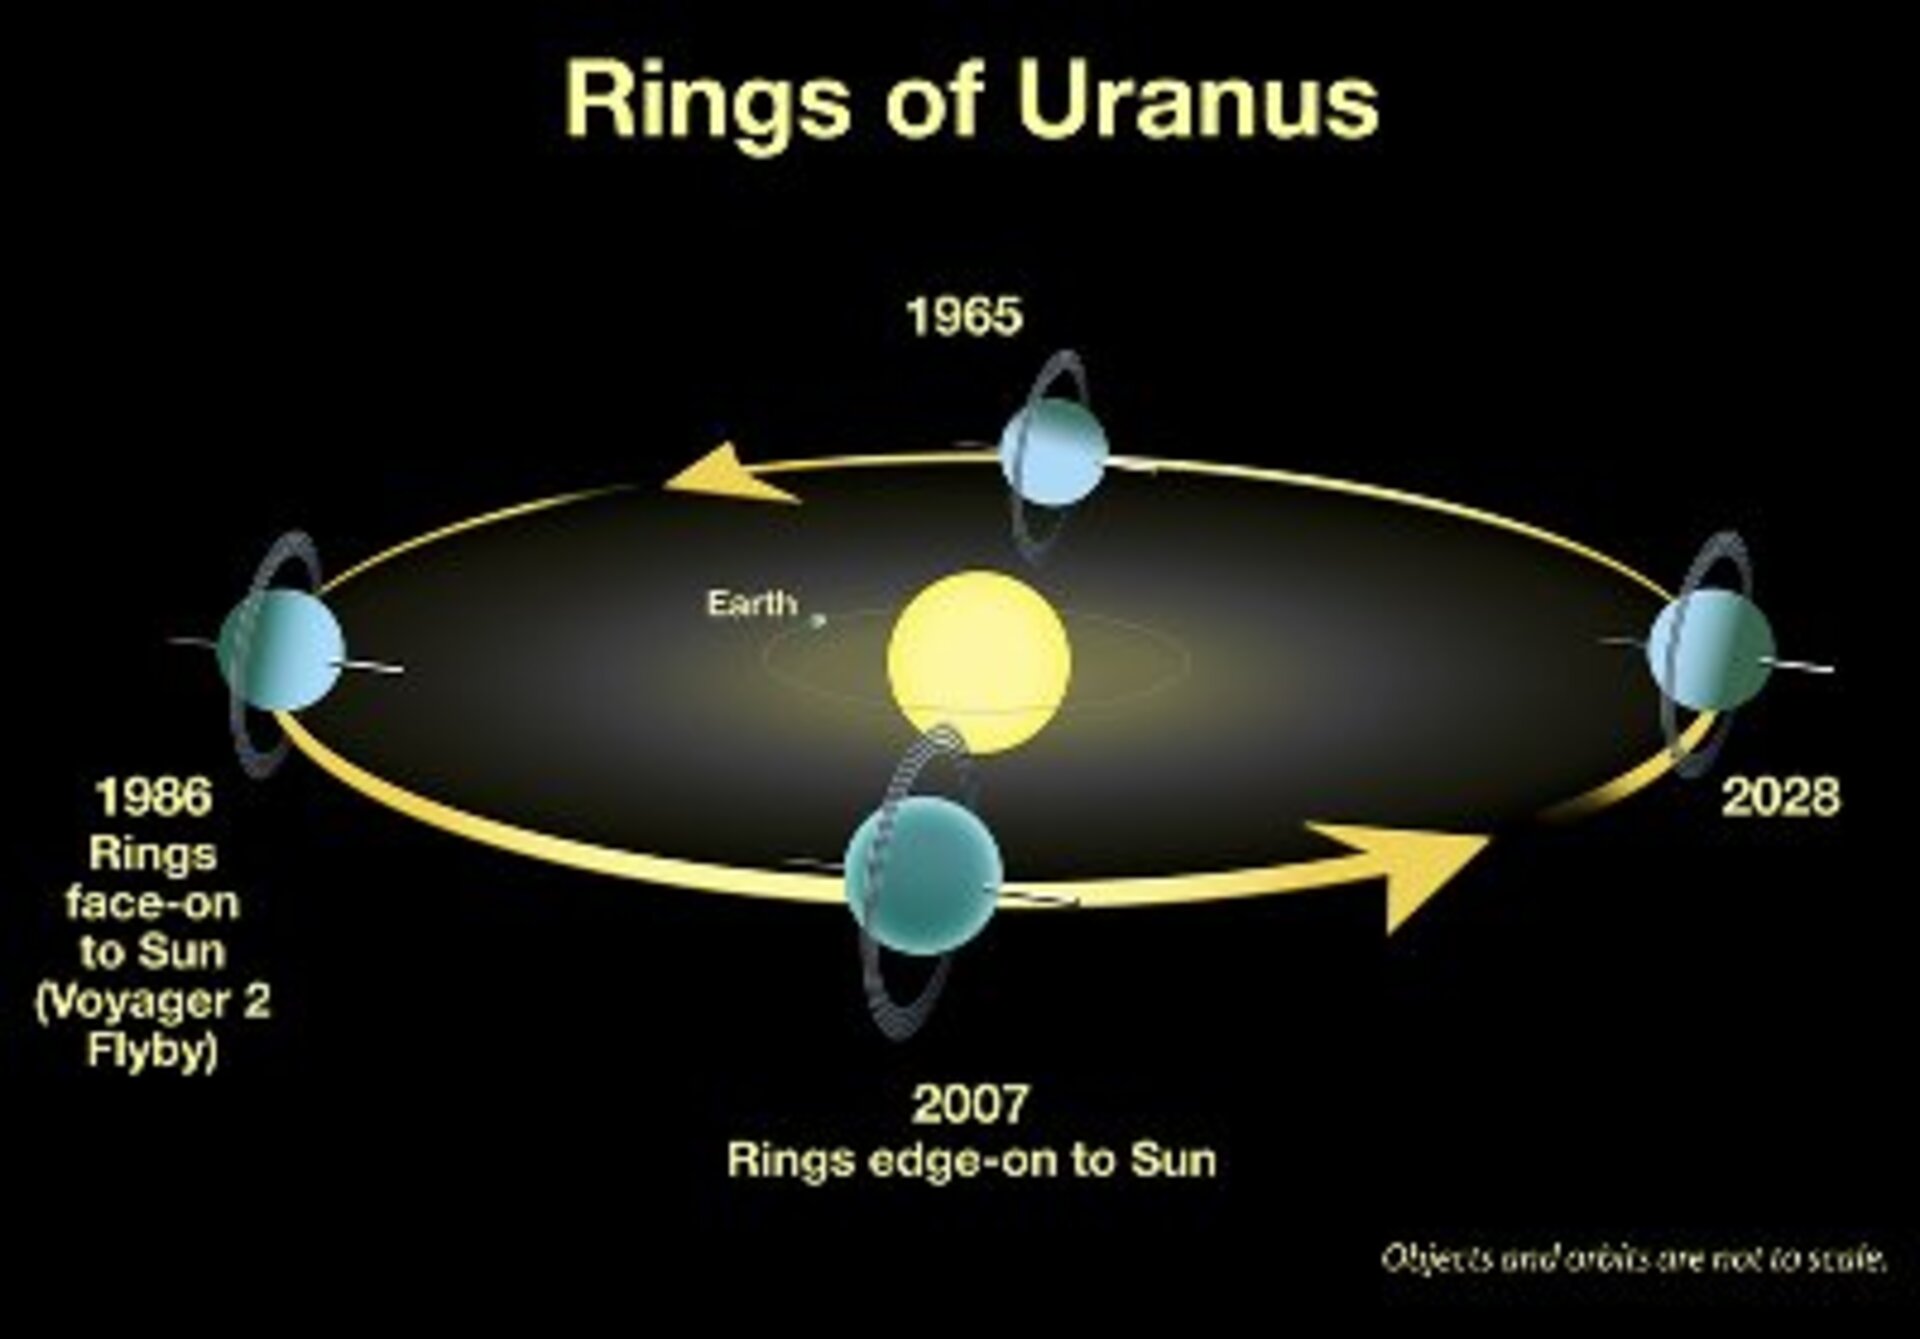 Each 42 years we see Uranus' rings edge-on